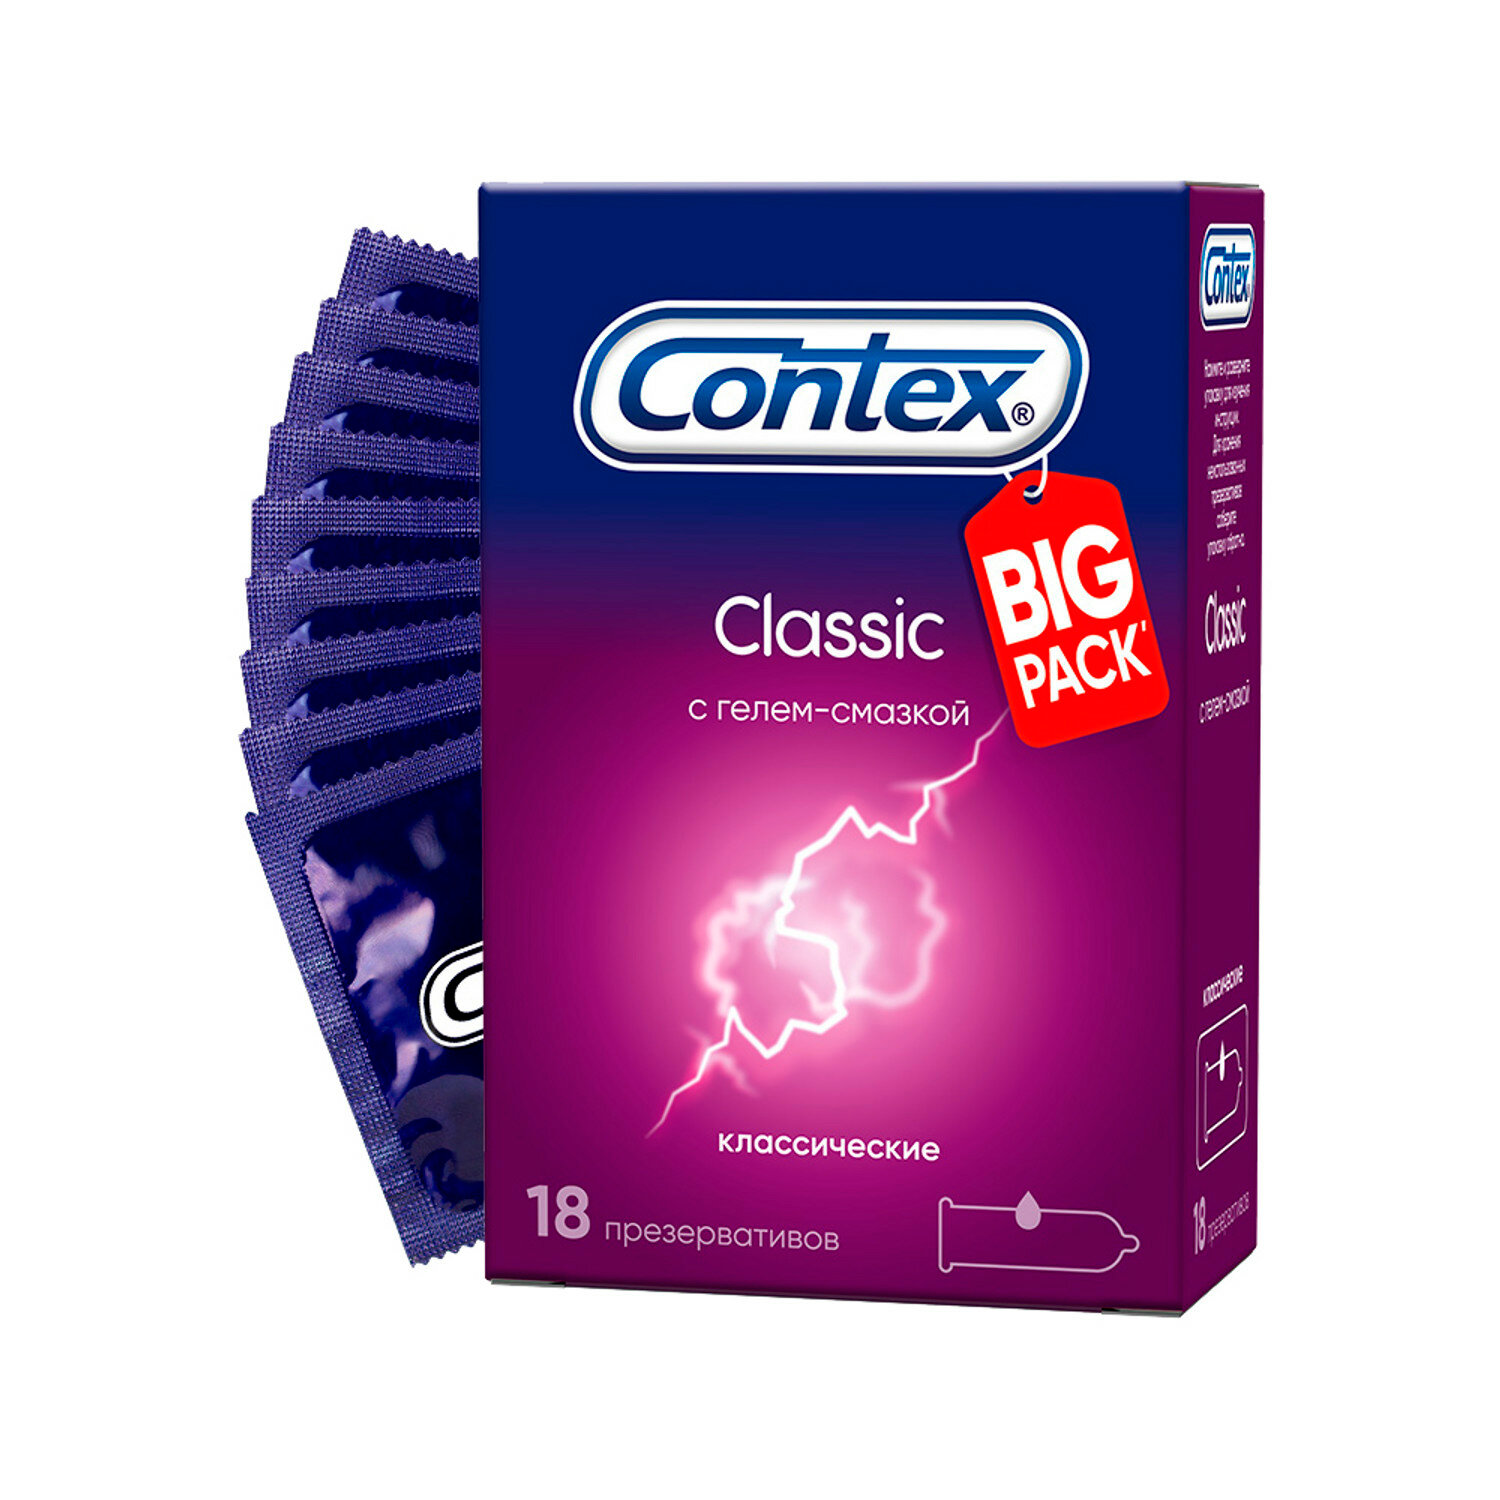 Презервативы Contex Classic, классические, с гелем-смазкой, 18 шт.